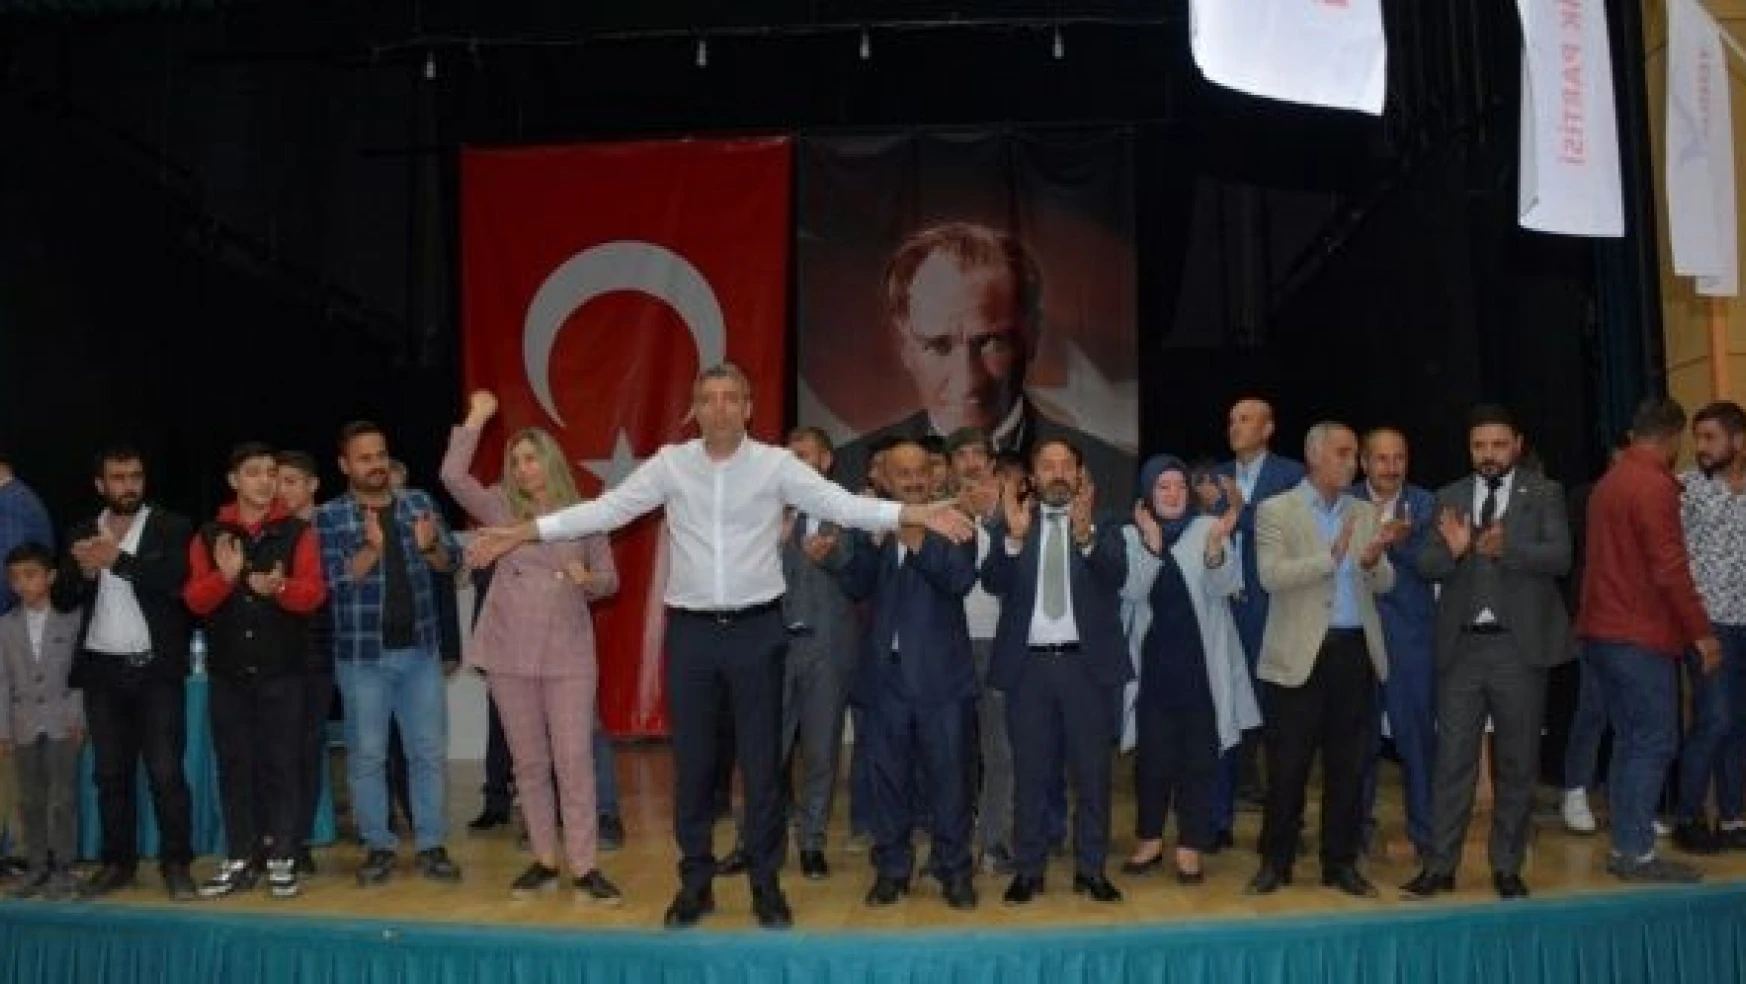 Yenilik Partisi Genel Başkanı Yılmaz, Bitlis'te partisinin kongresine katıldı